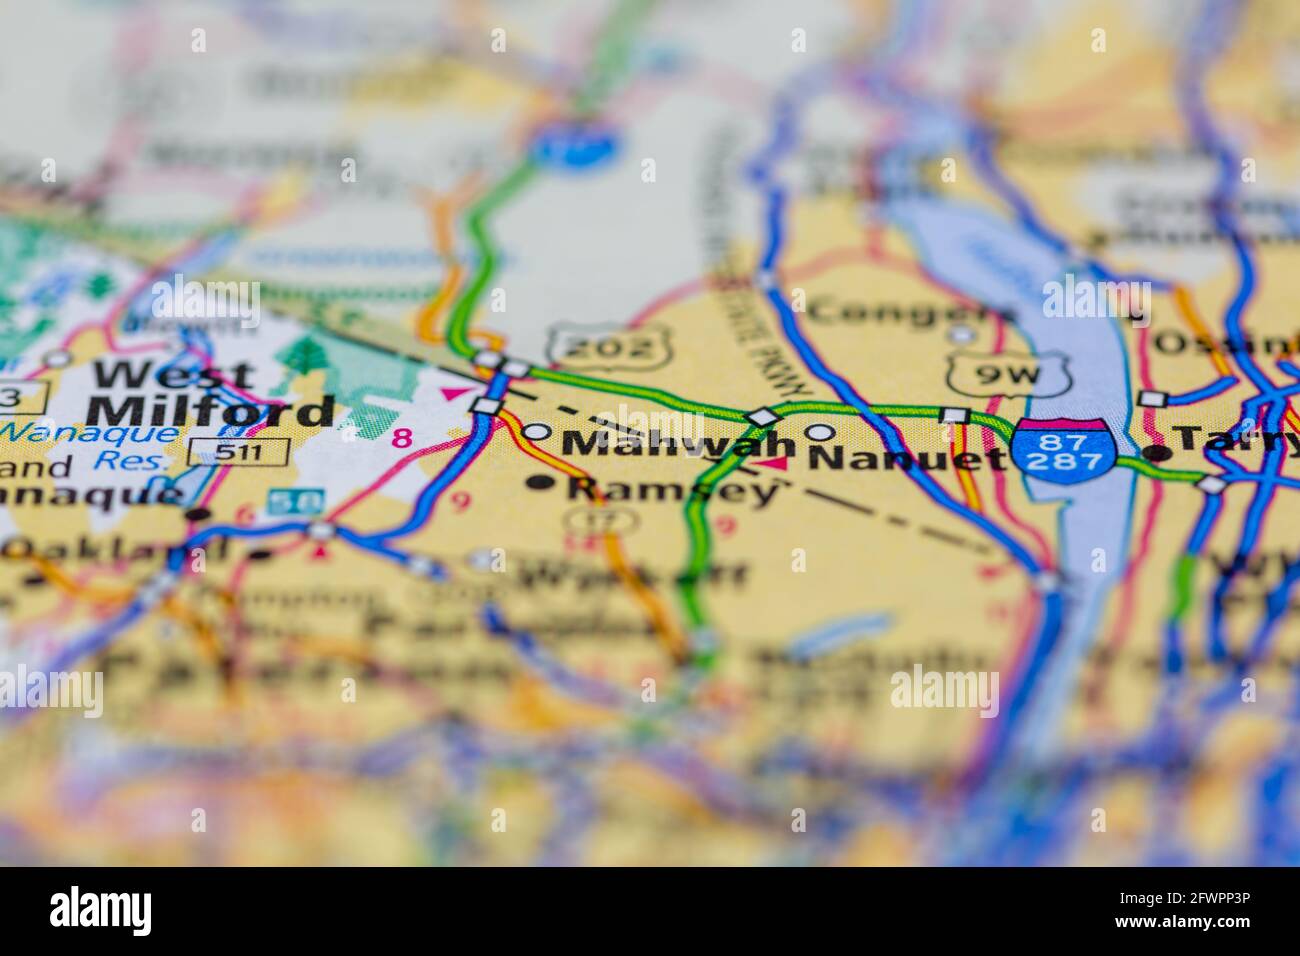 Mahwah New Jersey USA montré sur une carte de géographie ou carte routière Banque D'Images